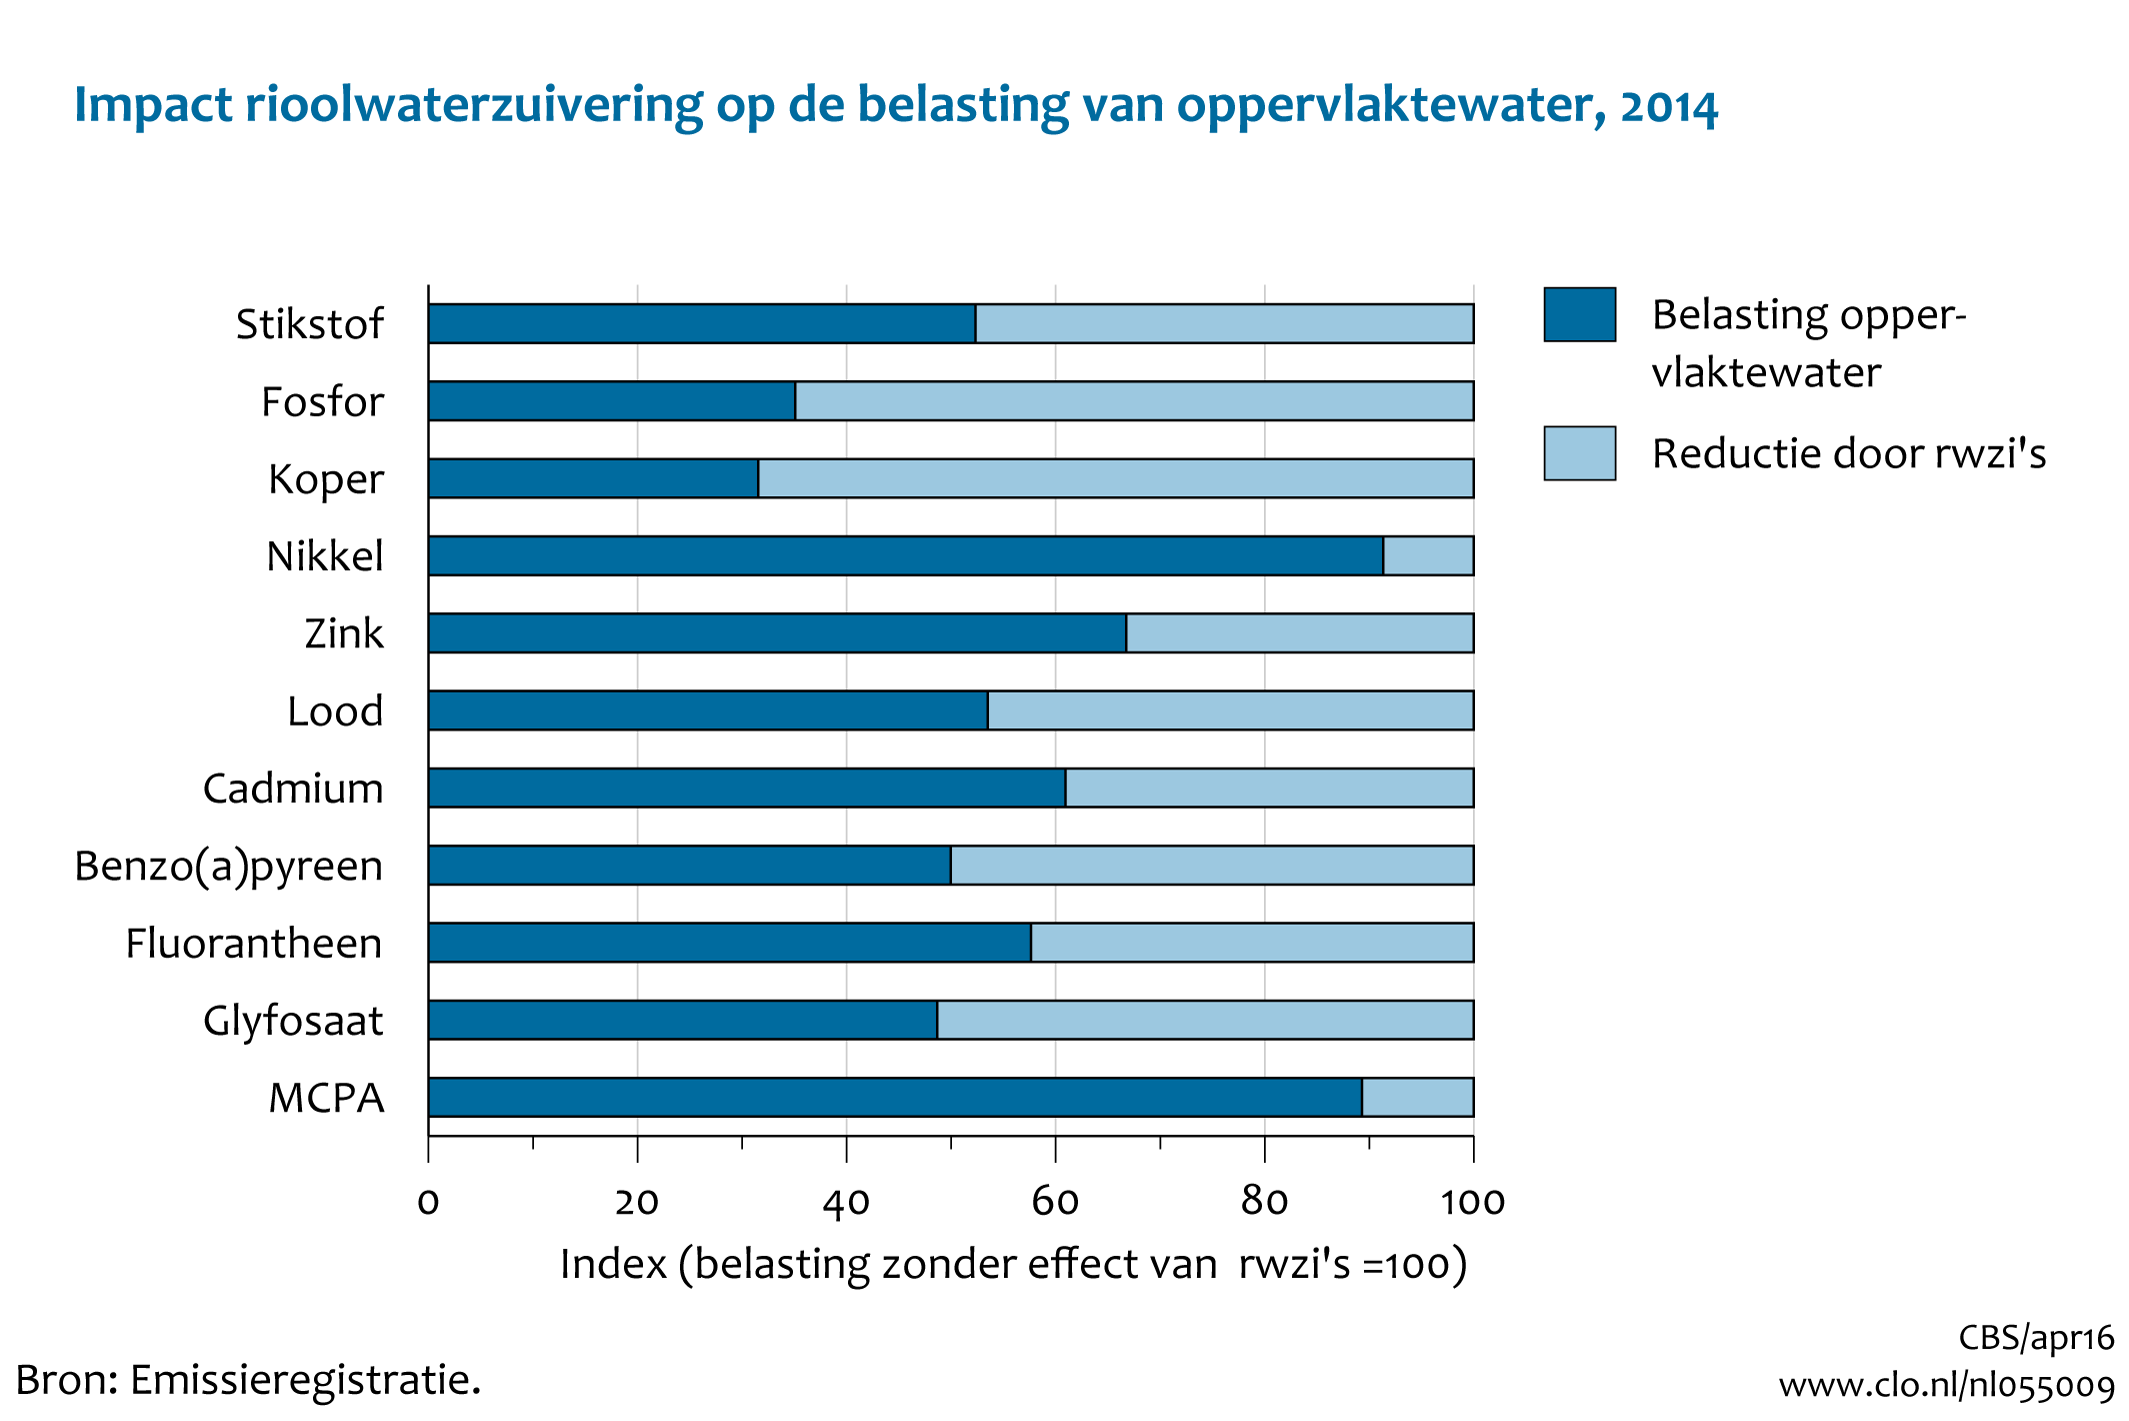 Figuur Impact rioolwaterzuivering op de belasting van oppervlaktewater 2014. In de rest van de tekst wordt deze figuur uitgebreider uitgelegd.